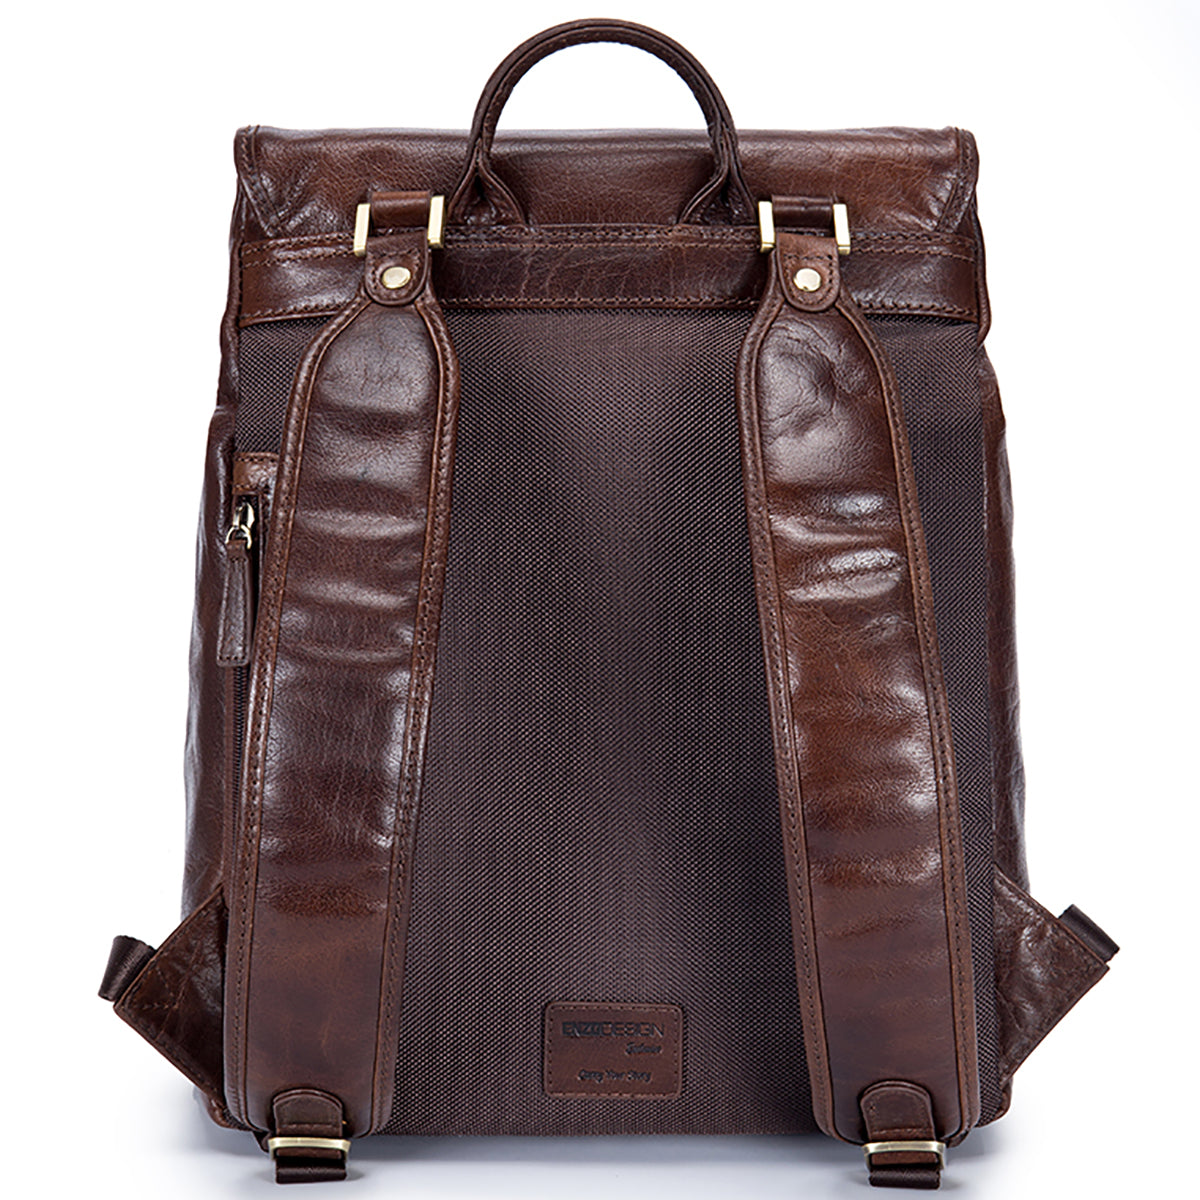 EnzoDesign Antique Two Tone Buffalo Leather Backpack